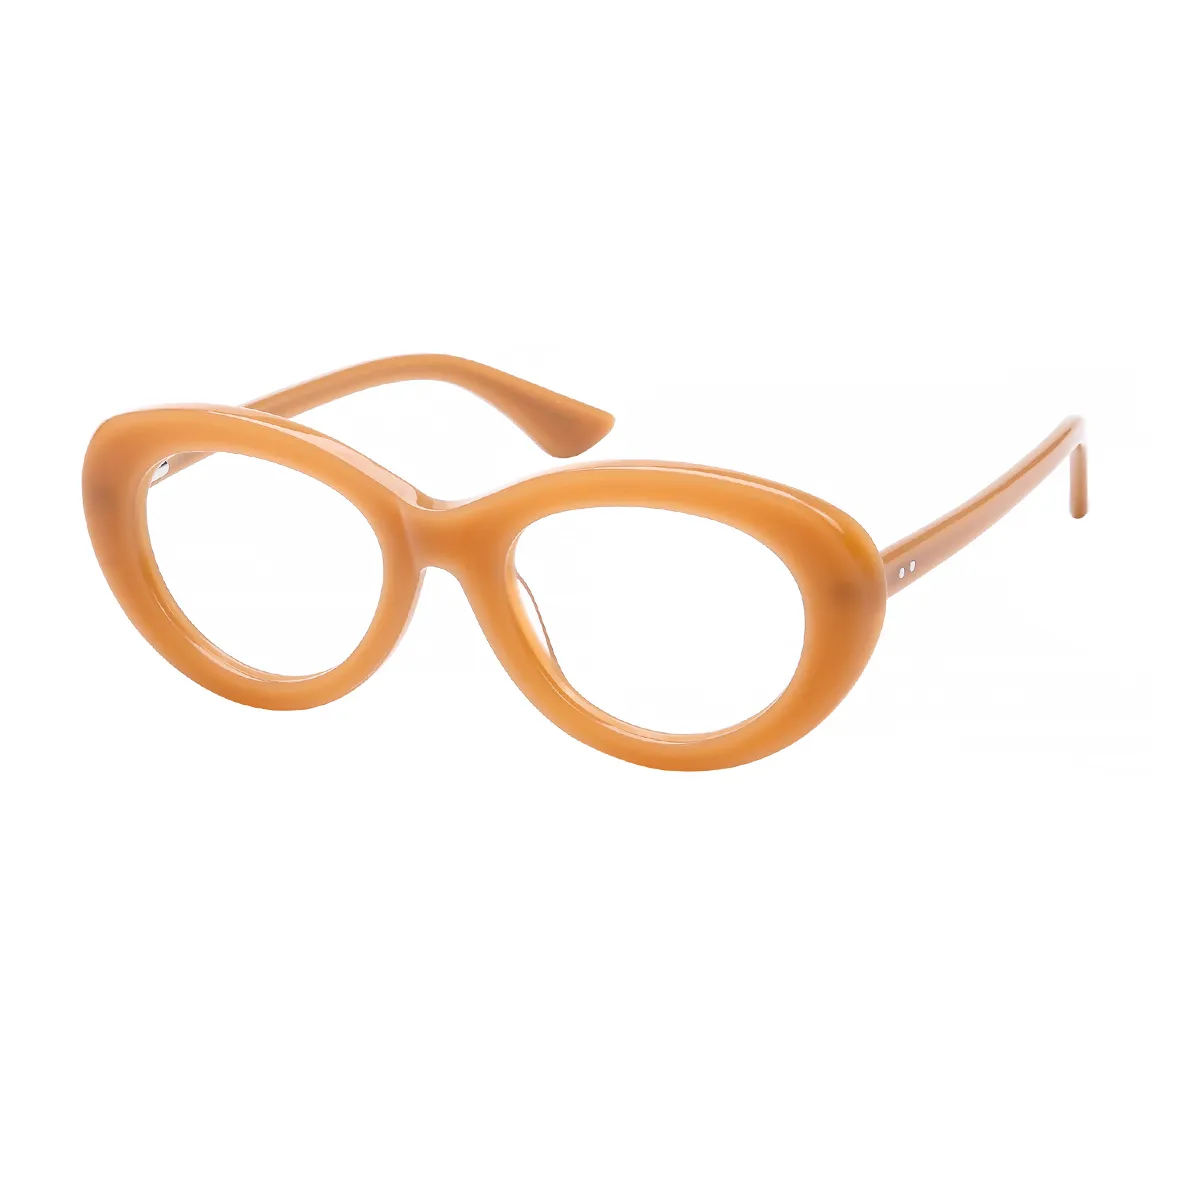 Jossi - Cat-eye Light Brown Glasses for Women - EFE